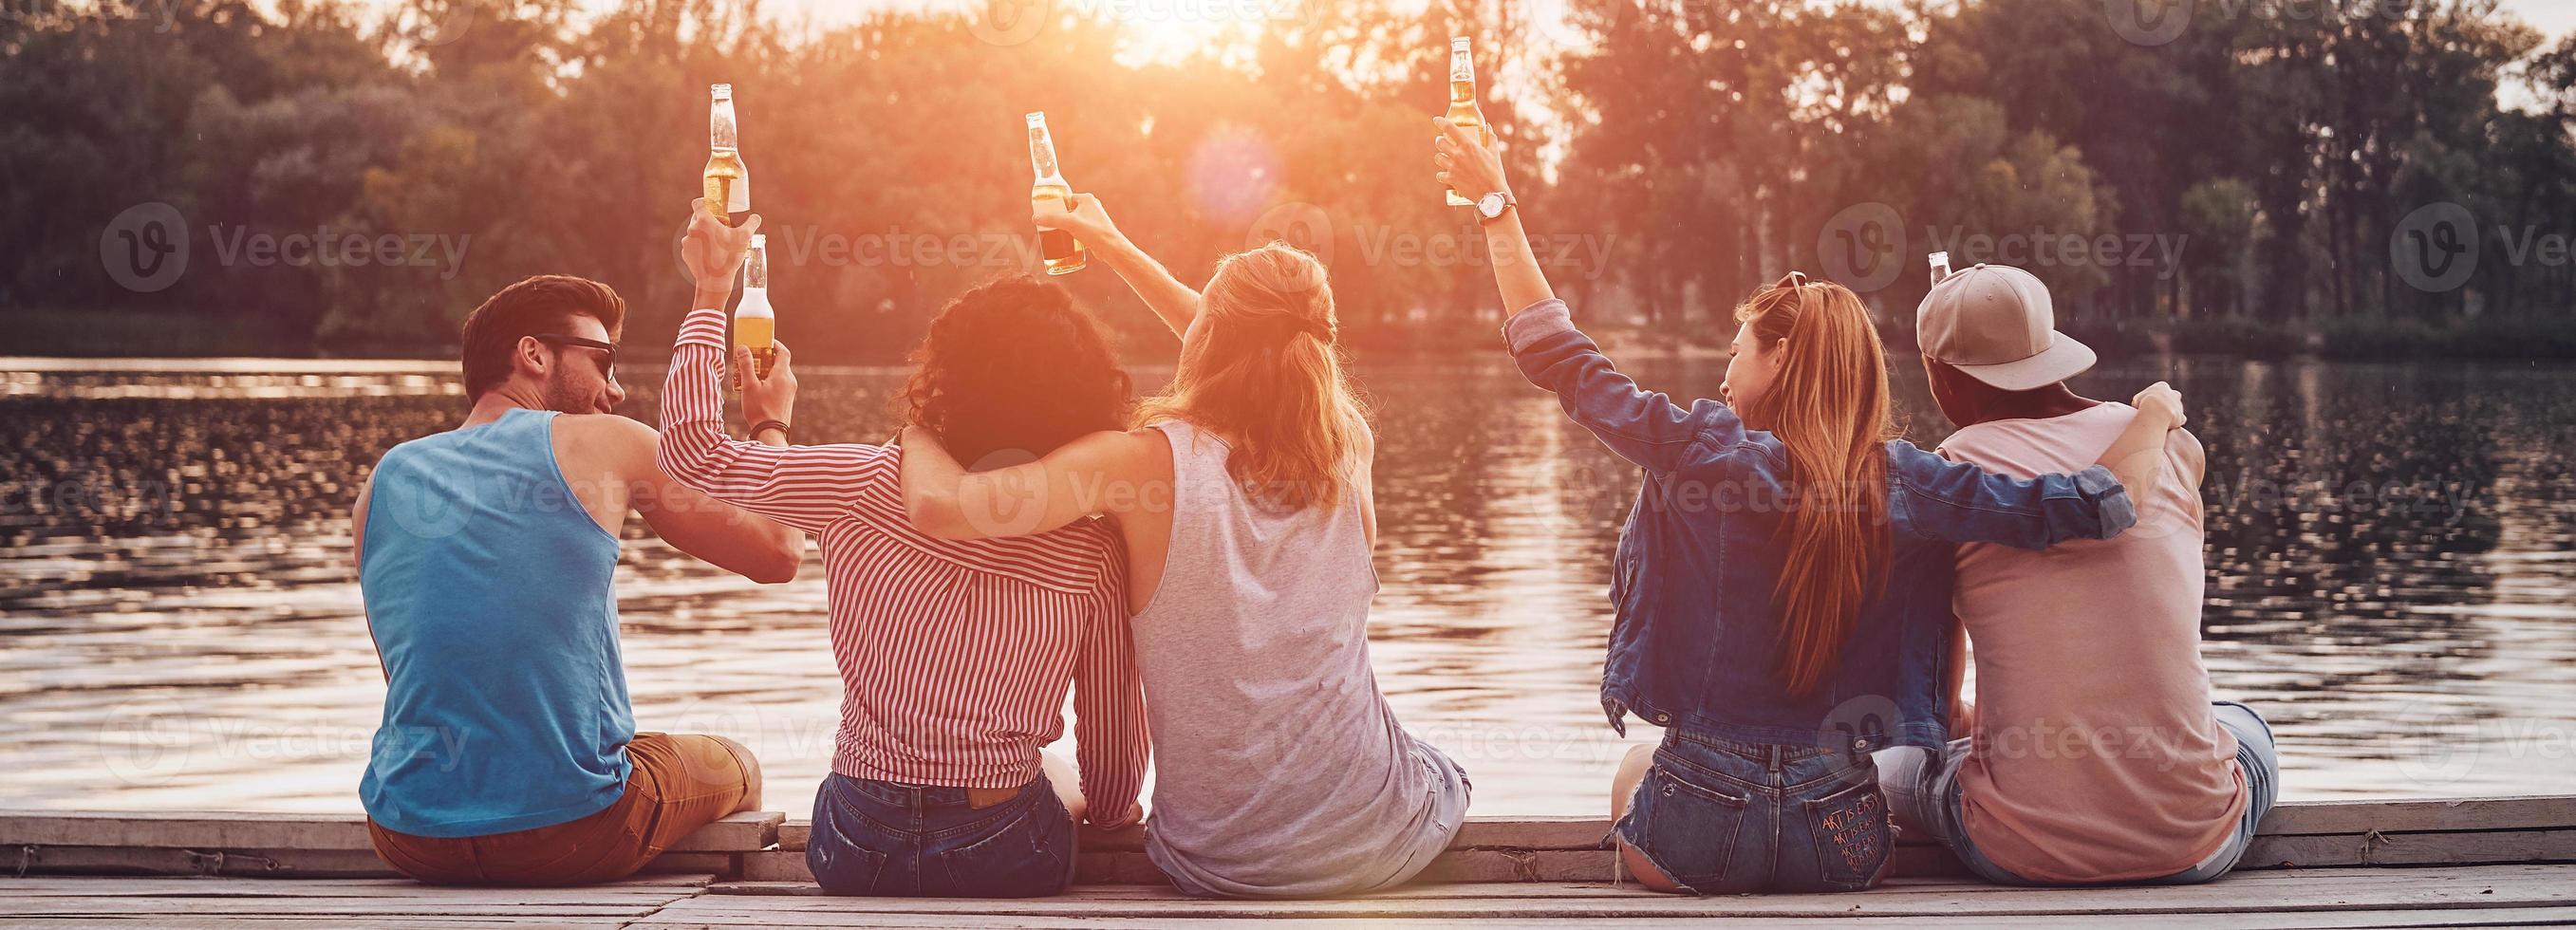 Rückansicht junger Menschen in Freizeitkleidung, die mit einer Bierflasche anstoßen, während sie auf dem Pier sitzen foto